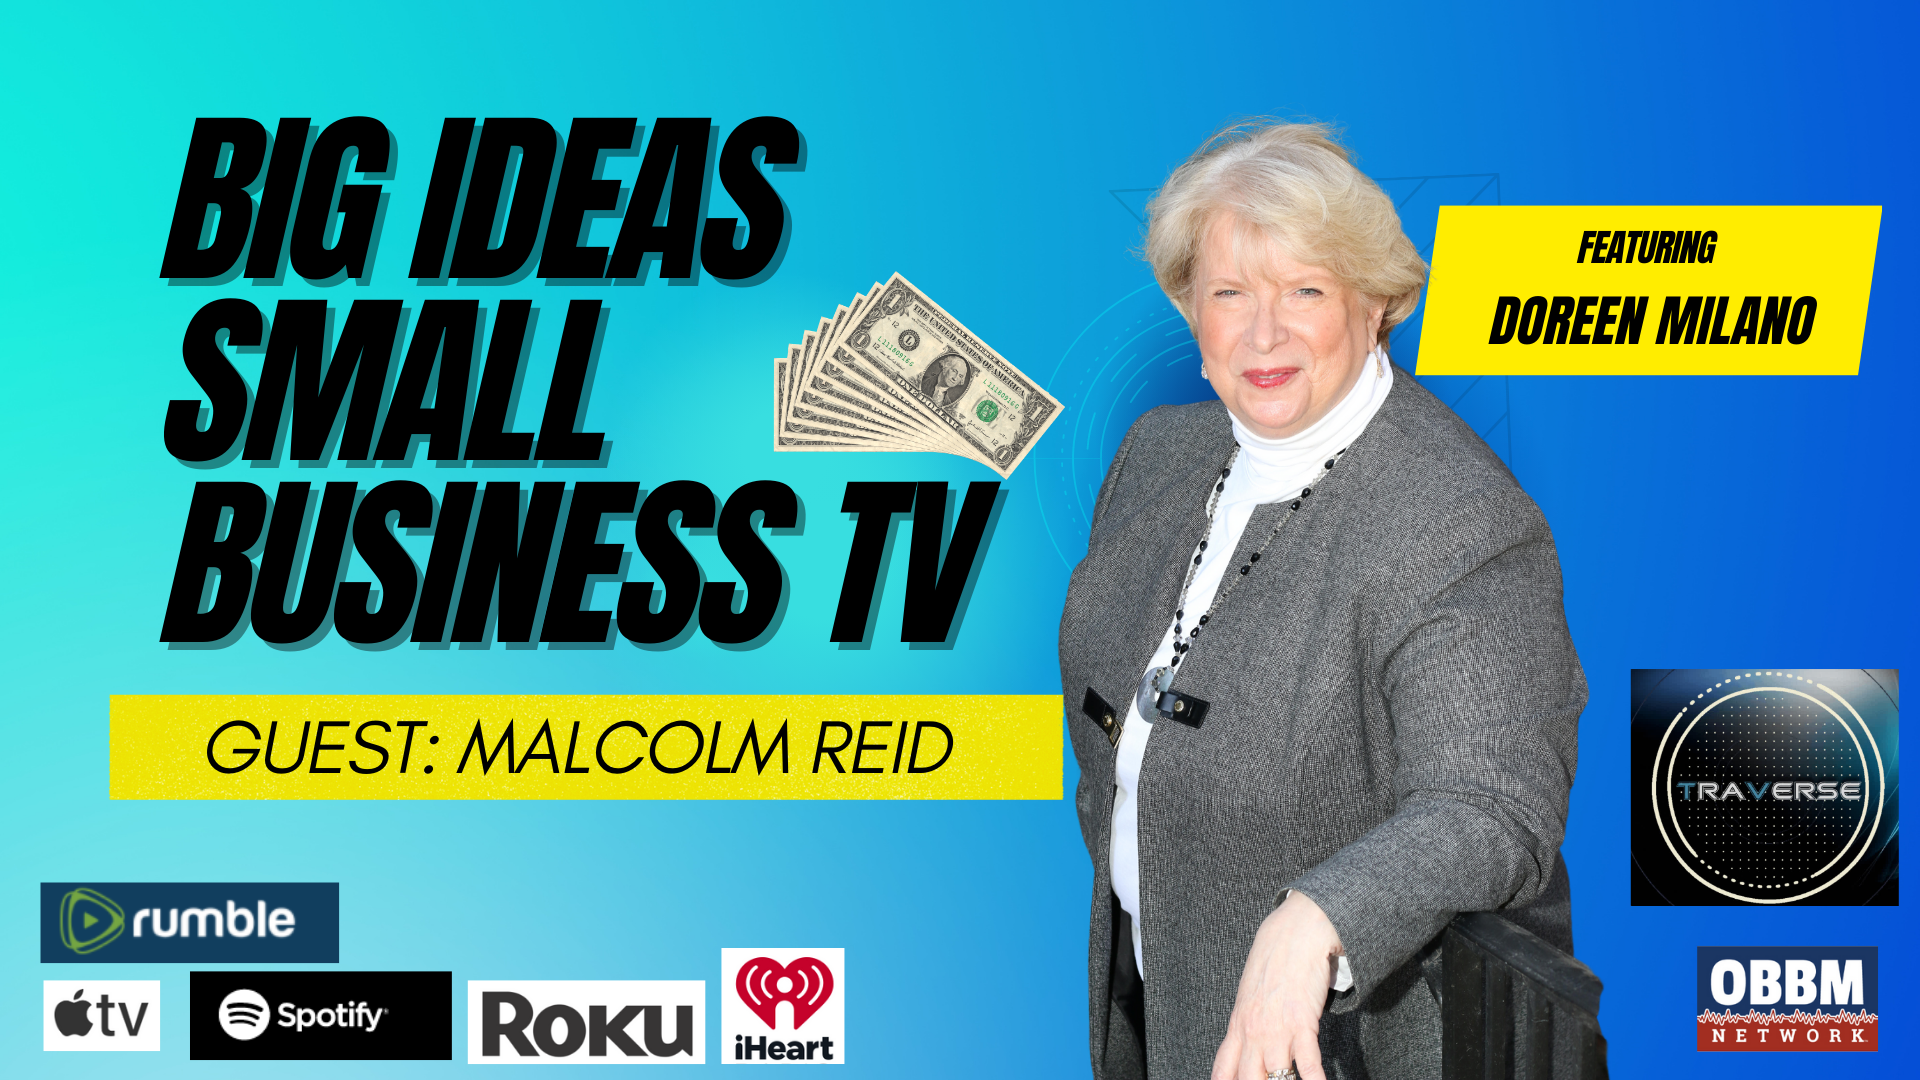 BISB11-ProGlobal's Malcolm Reid - Big Ideas Small Business  TV